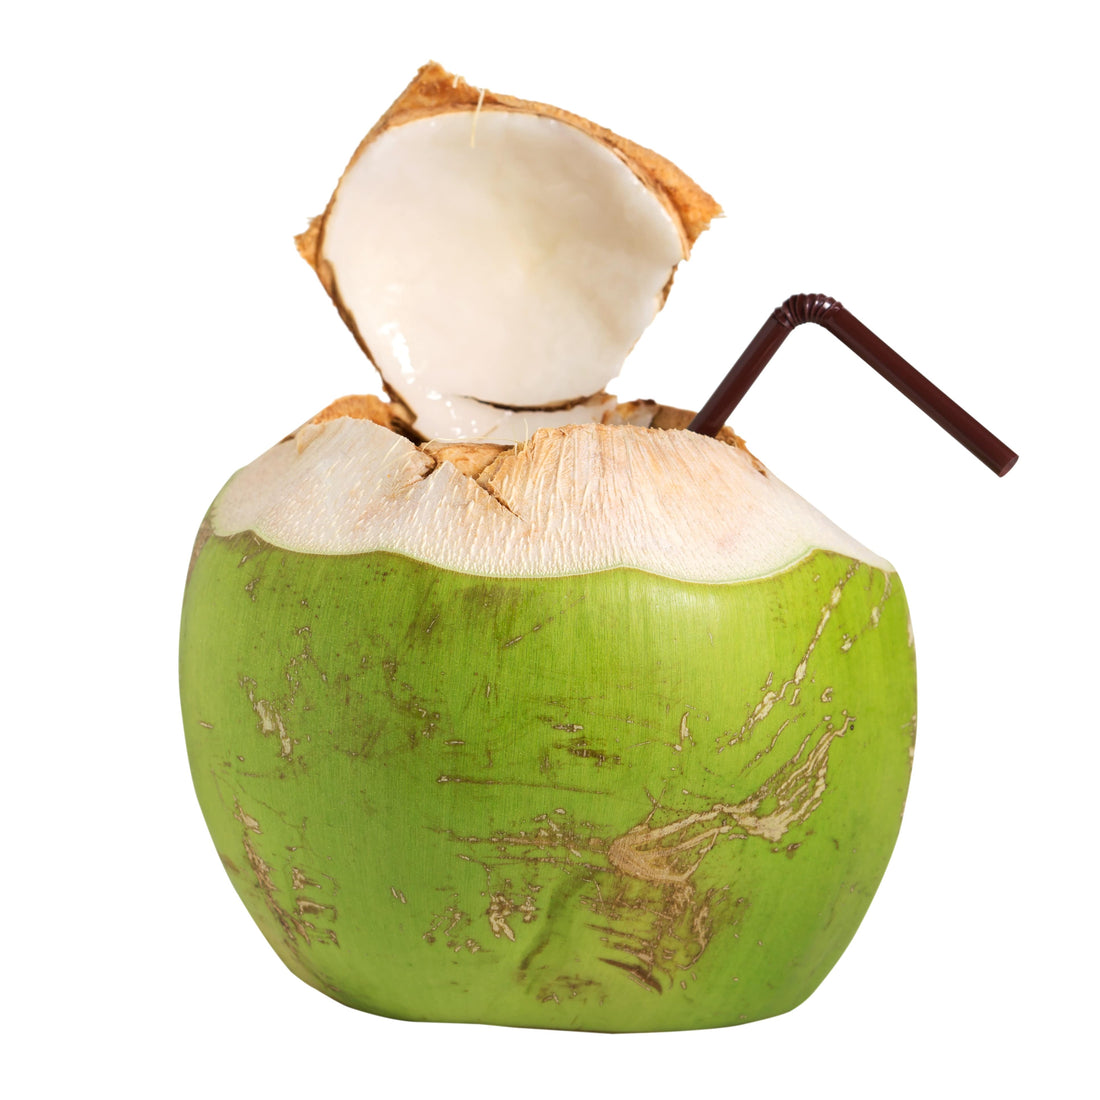 Pourquoi boire de l'eau de coco ? Ses bienfaits